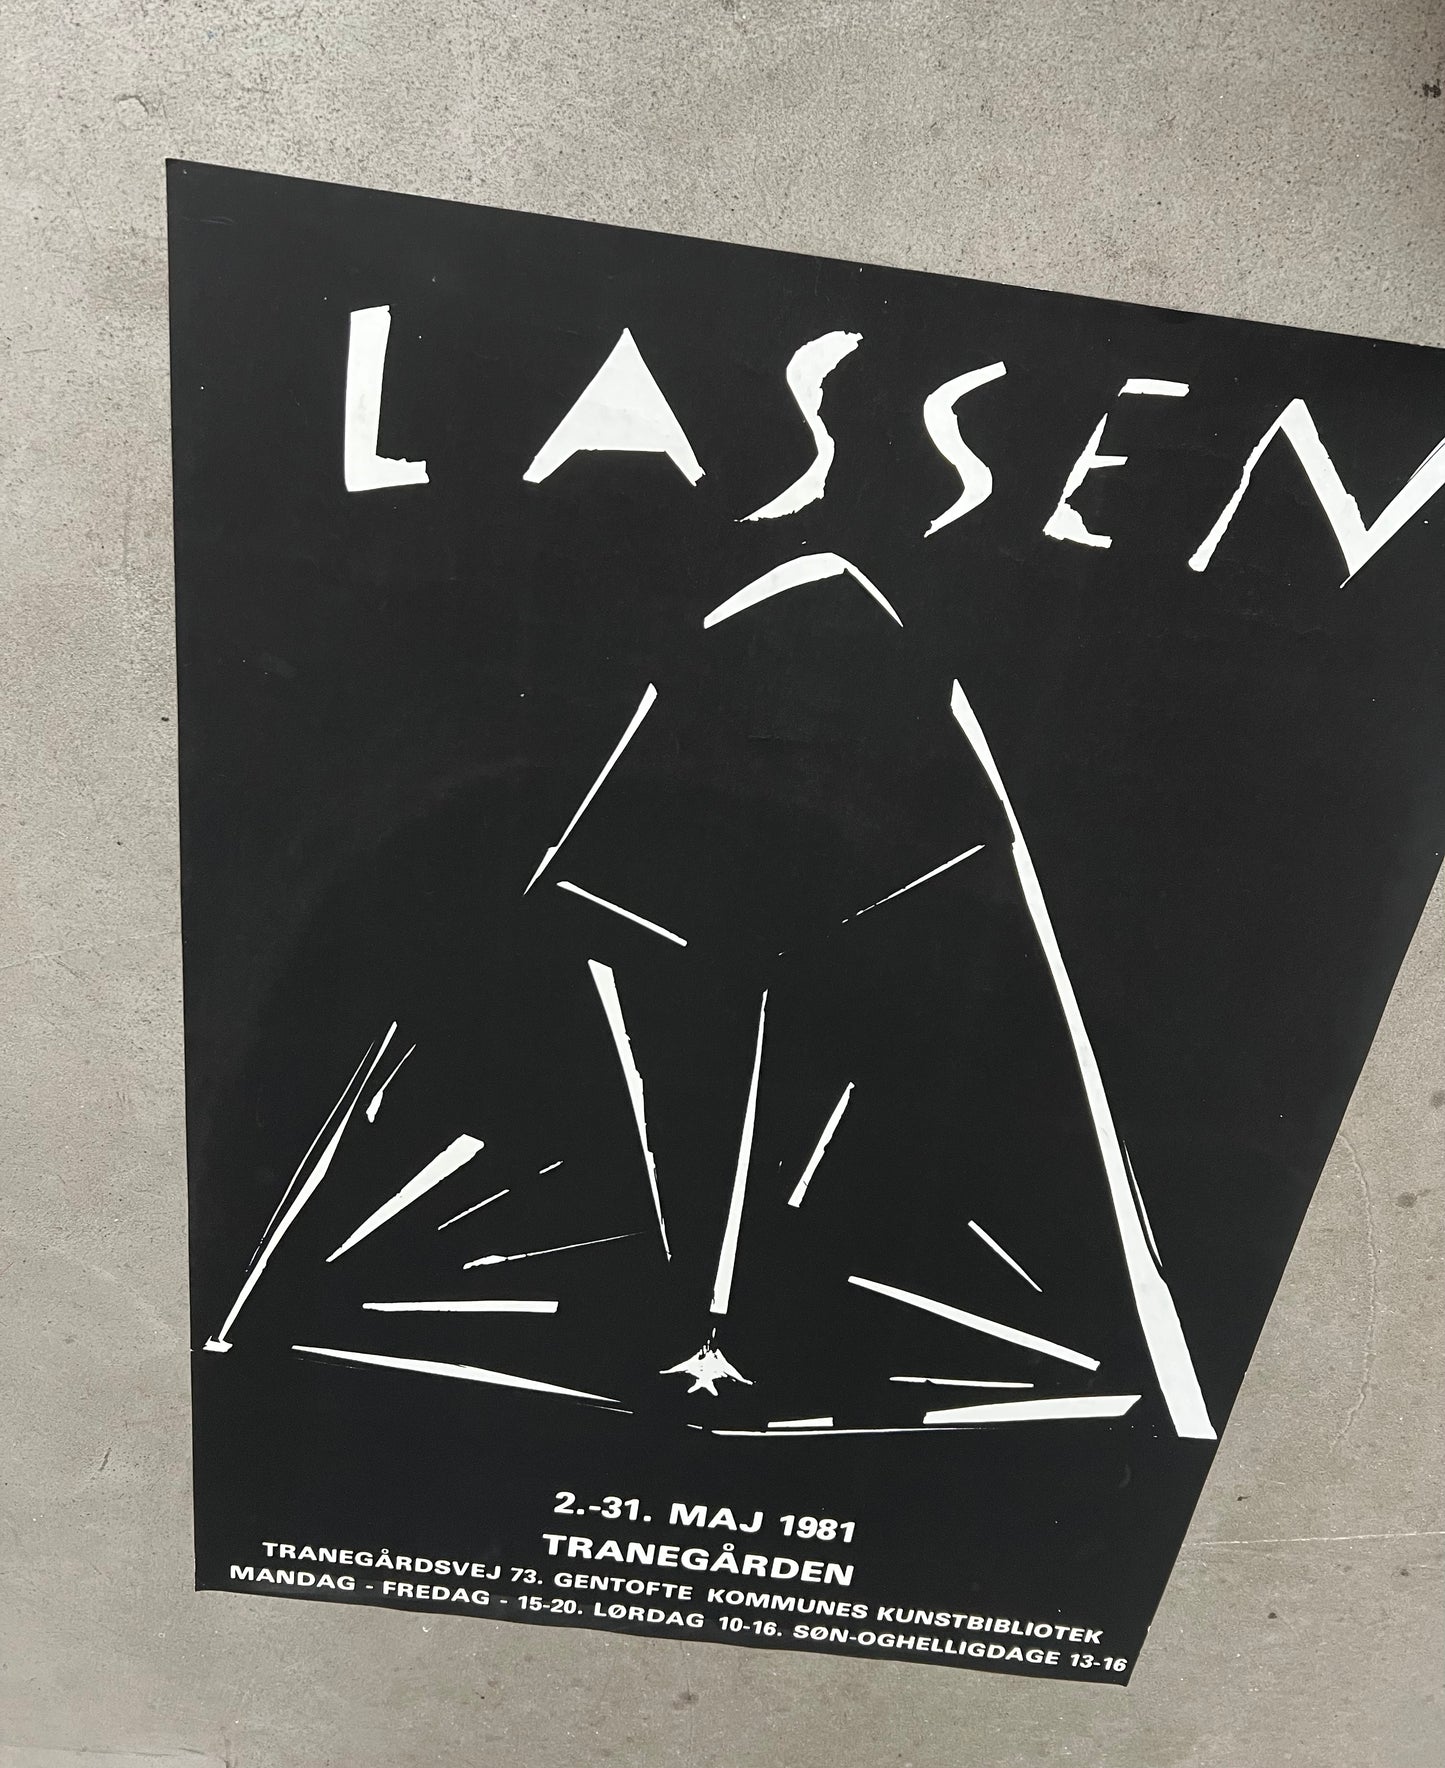 Marianne Lassen. Exhibition poster, 1981